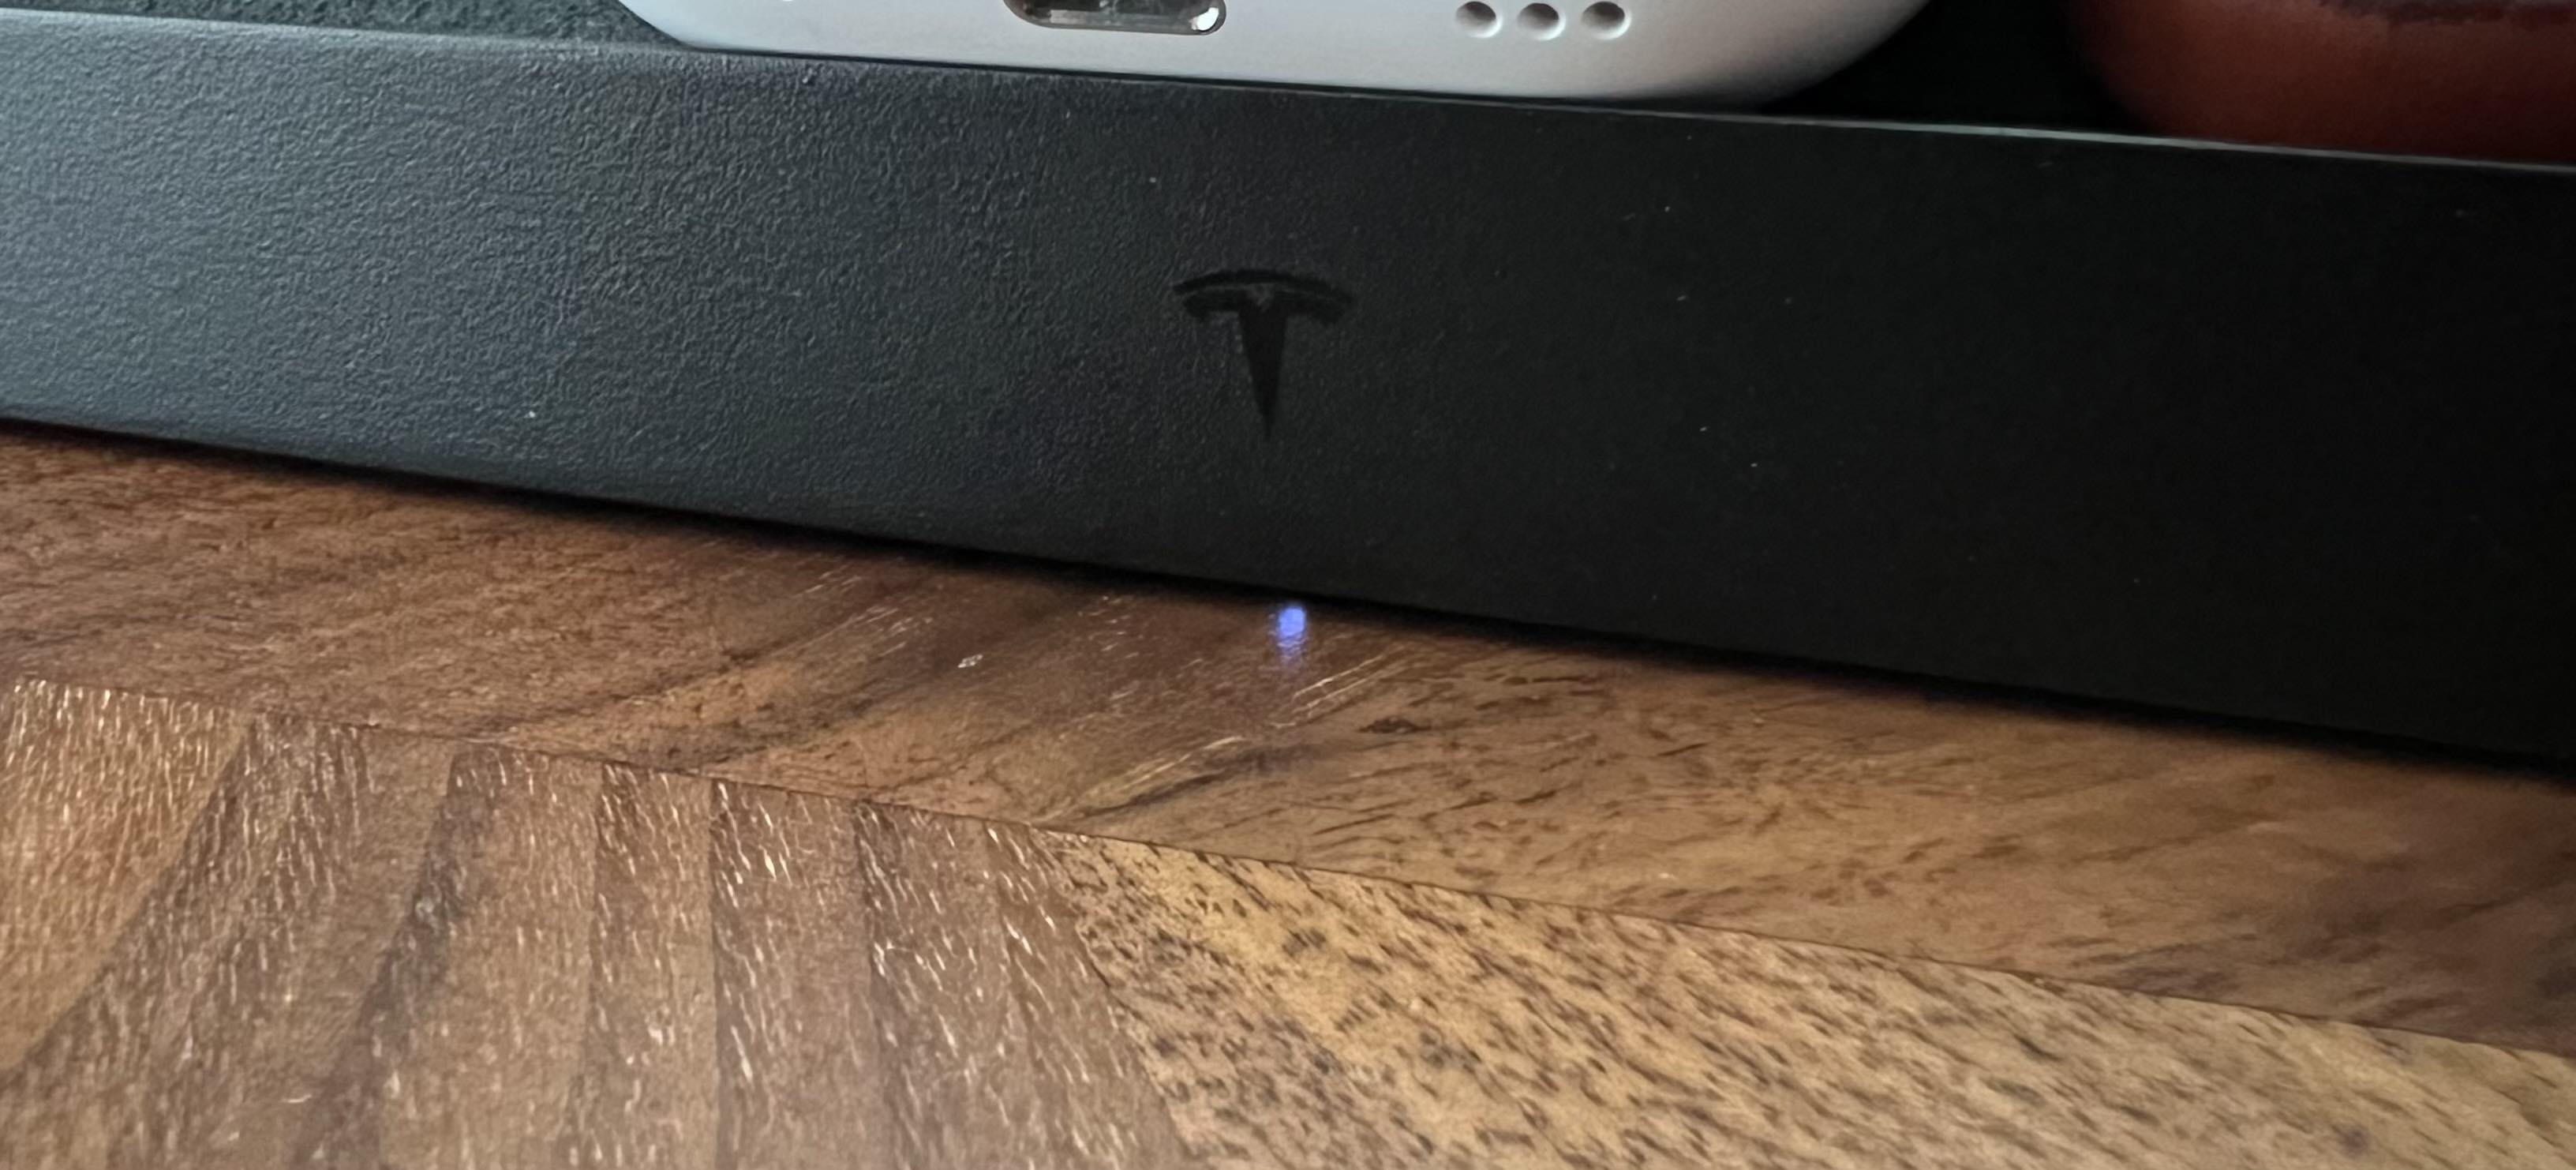 Indicador LED para pad de carregamento sem fio Tesla